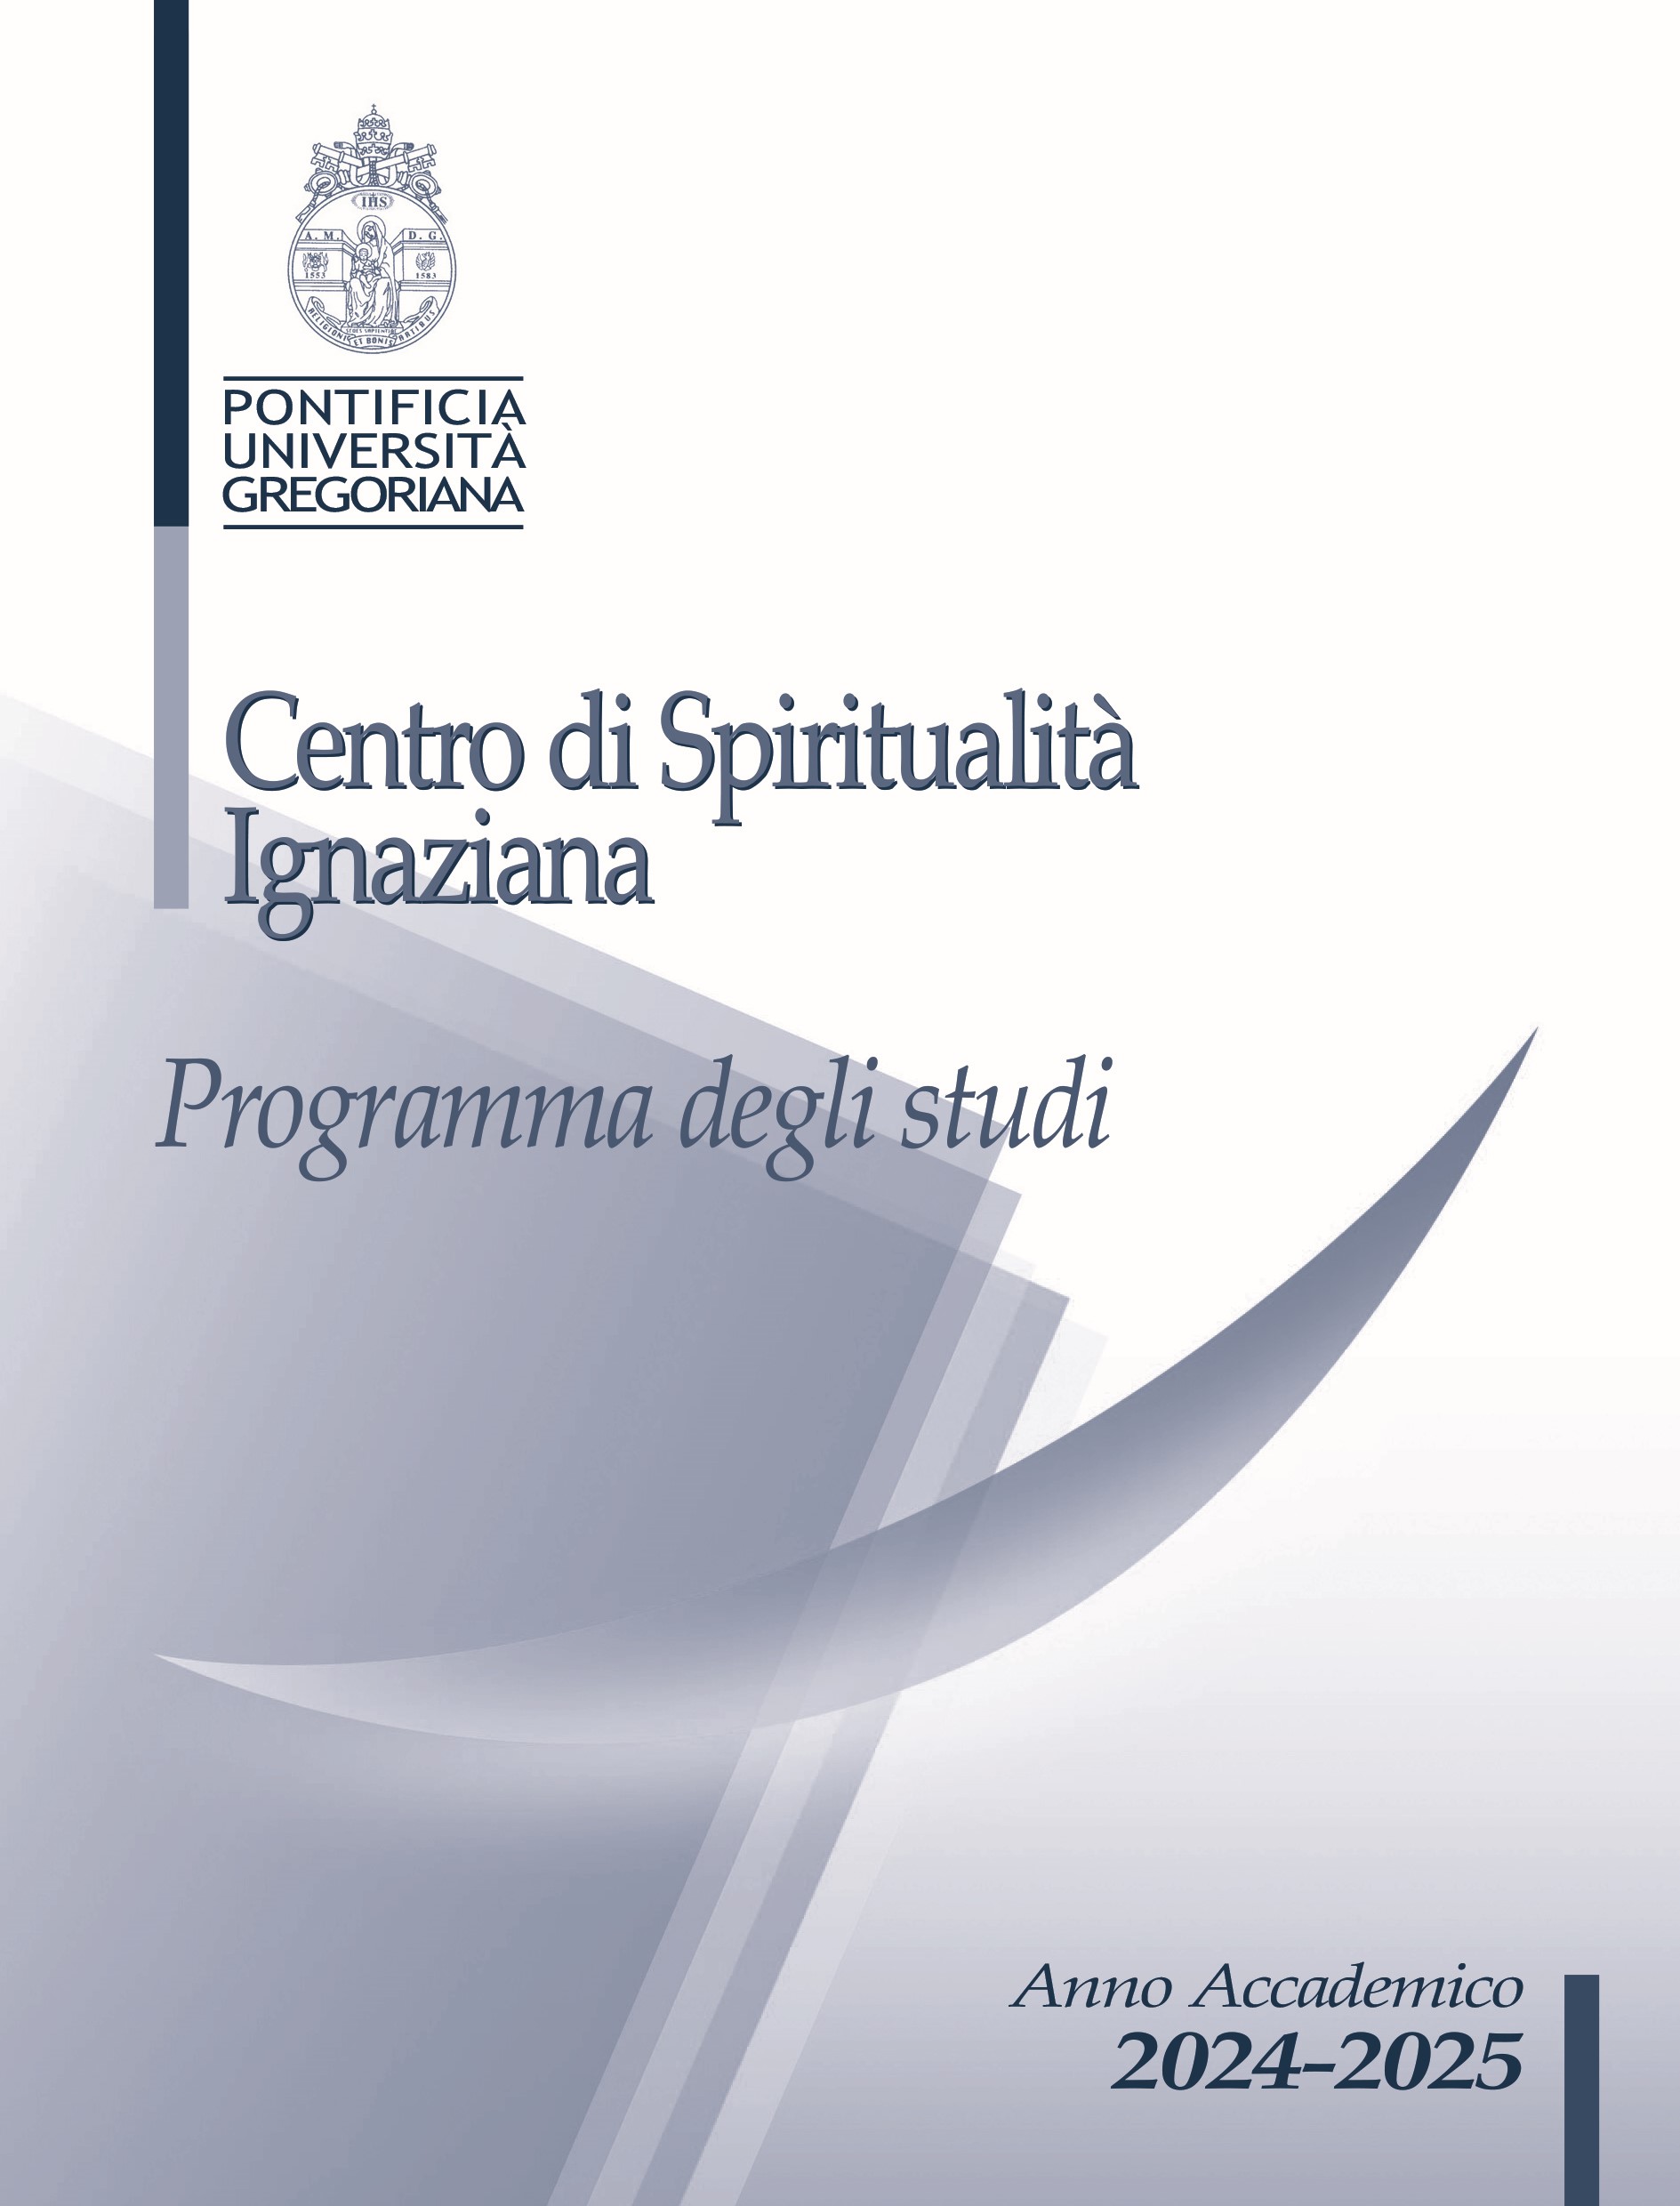 Centro di Spiritualità Ignaziana